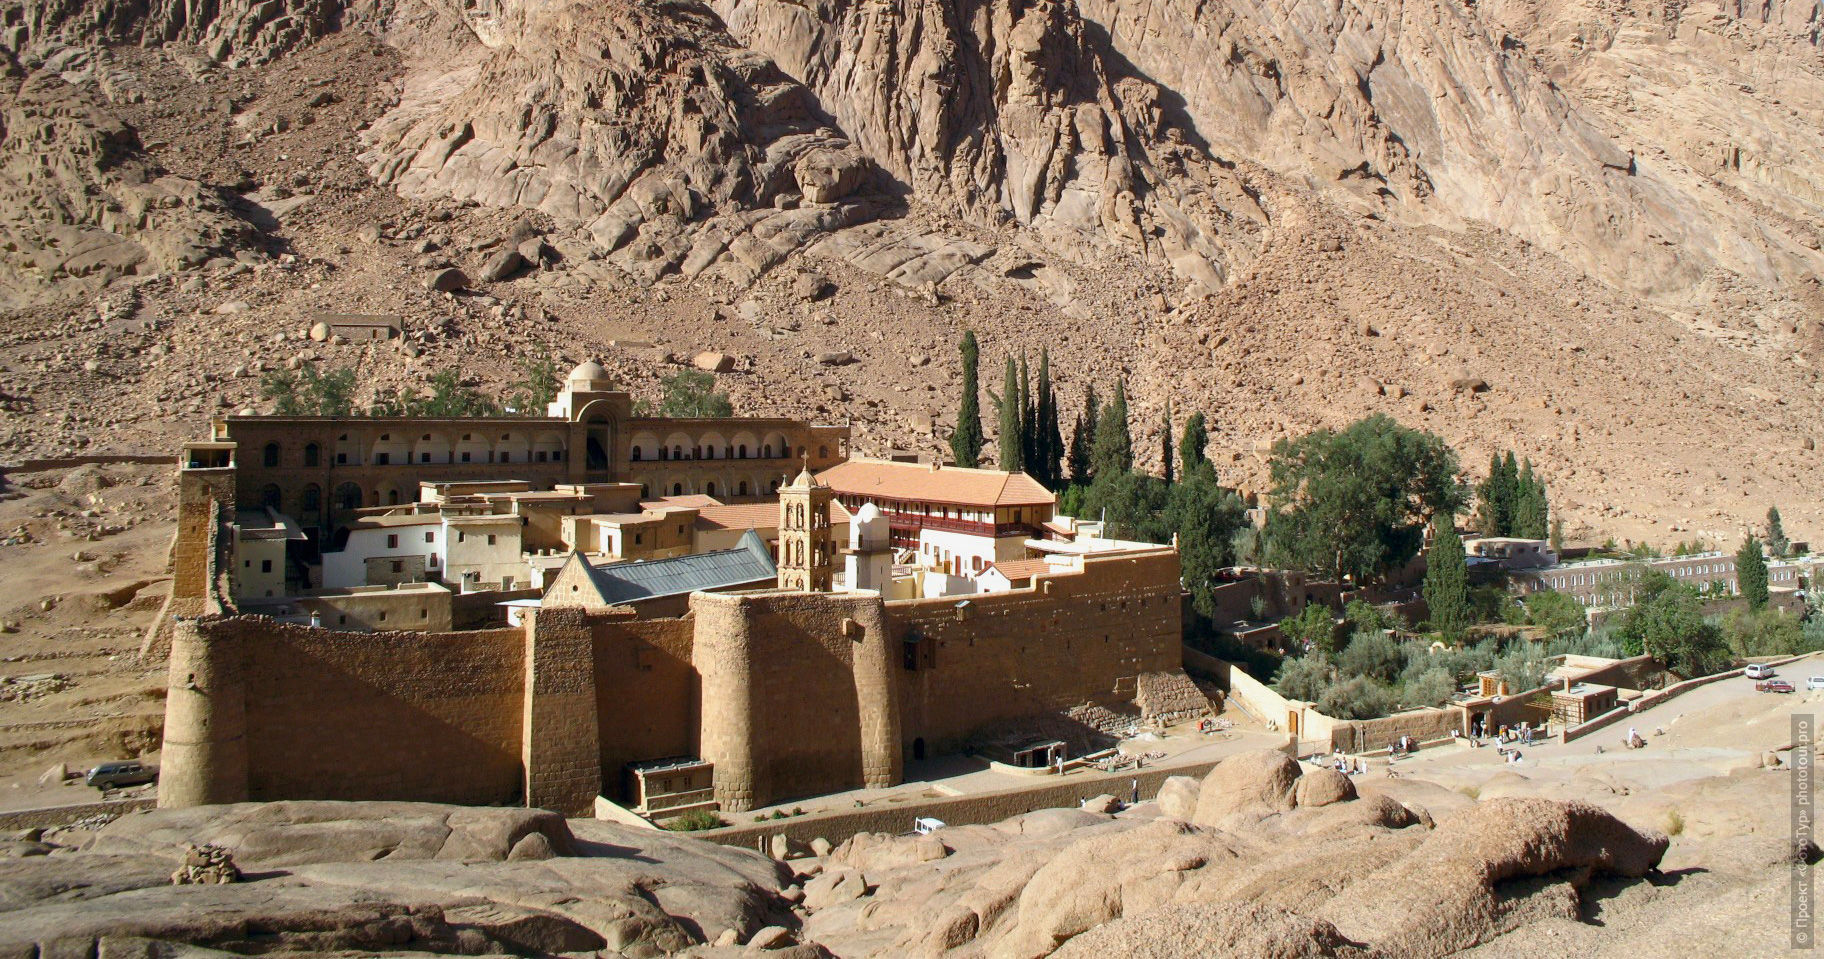 Монастырь Святой Екатерины, приключенческий фототур/тур пустыни и горы Синая, Египет, 27 ноября - 8 декабря 2021 года.